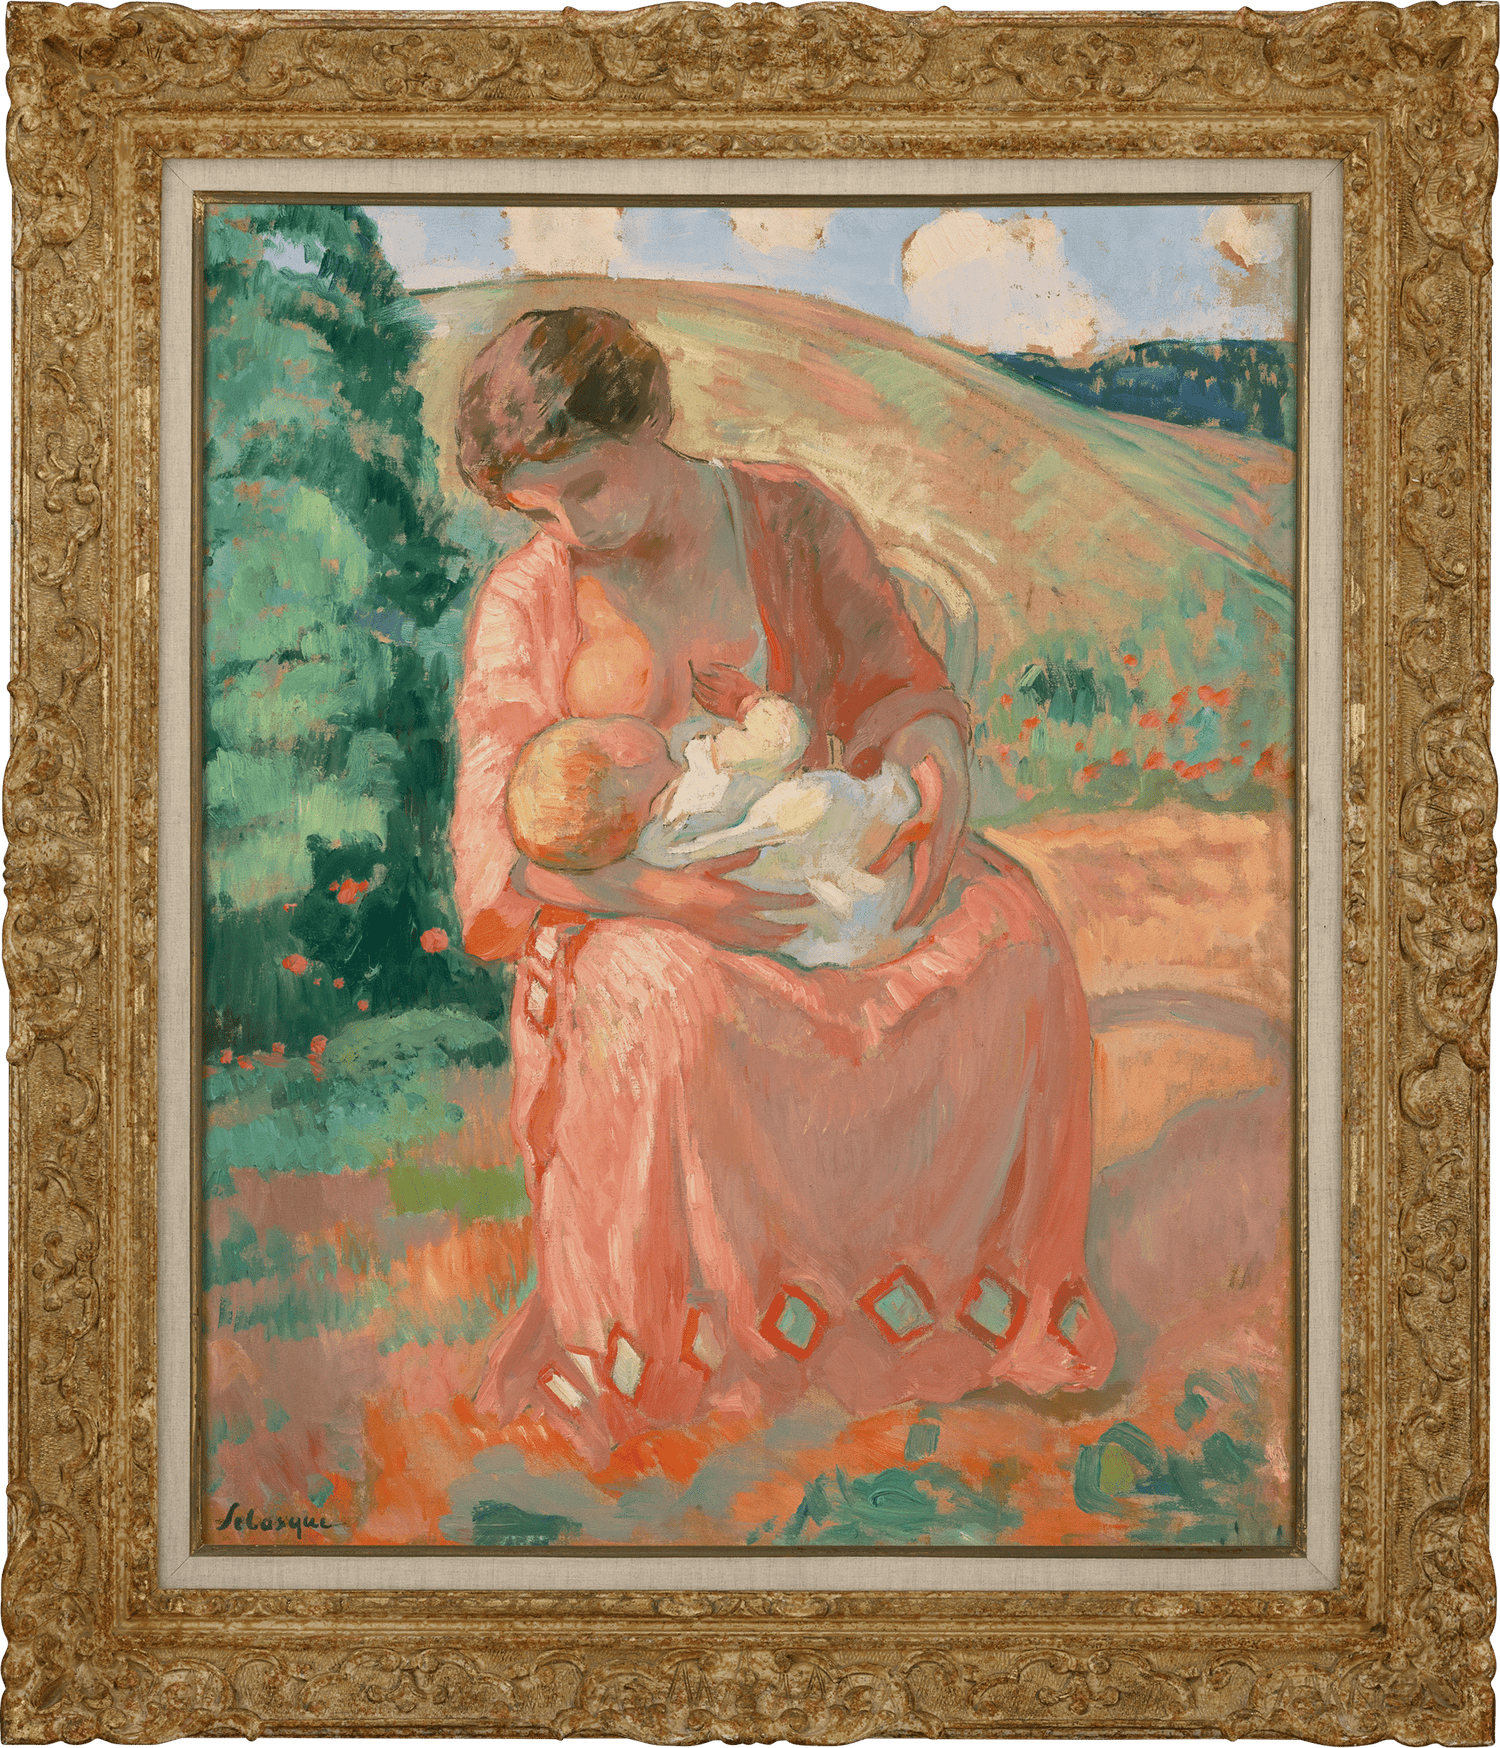 Maternité by Henri Lebasque